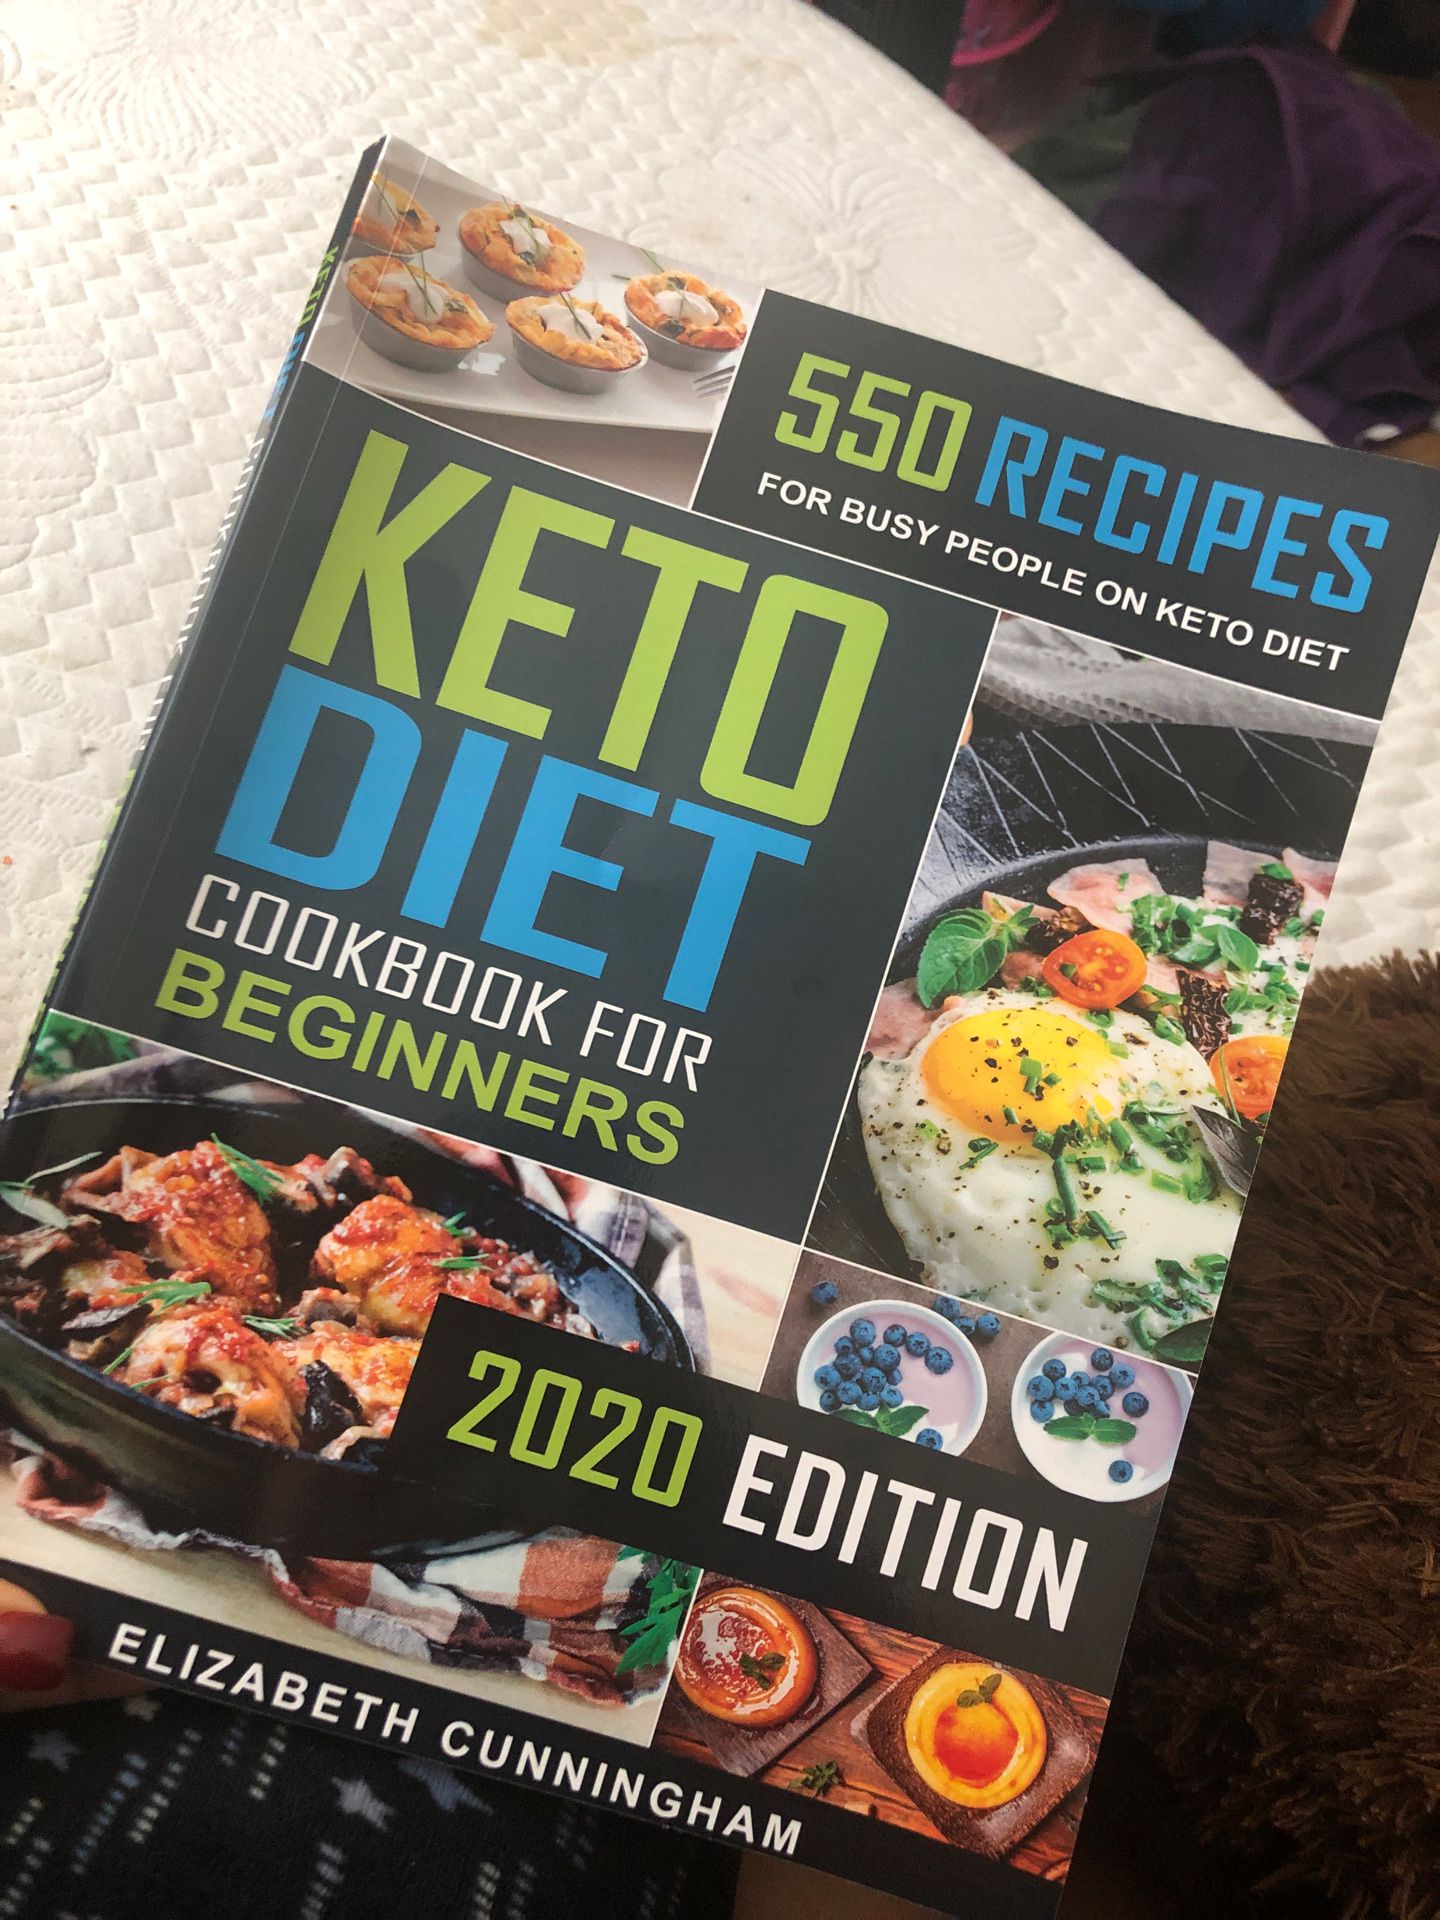 Keto diet book